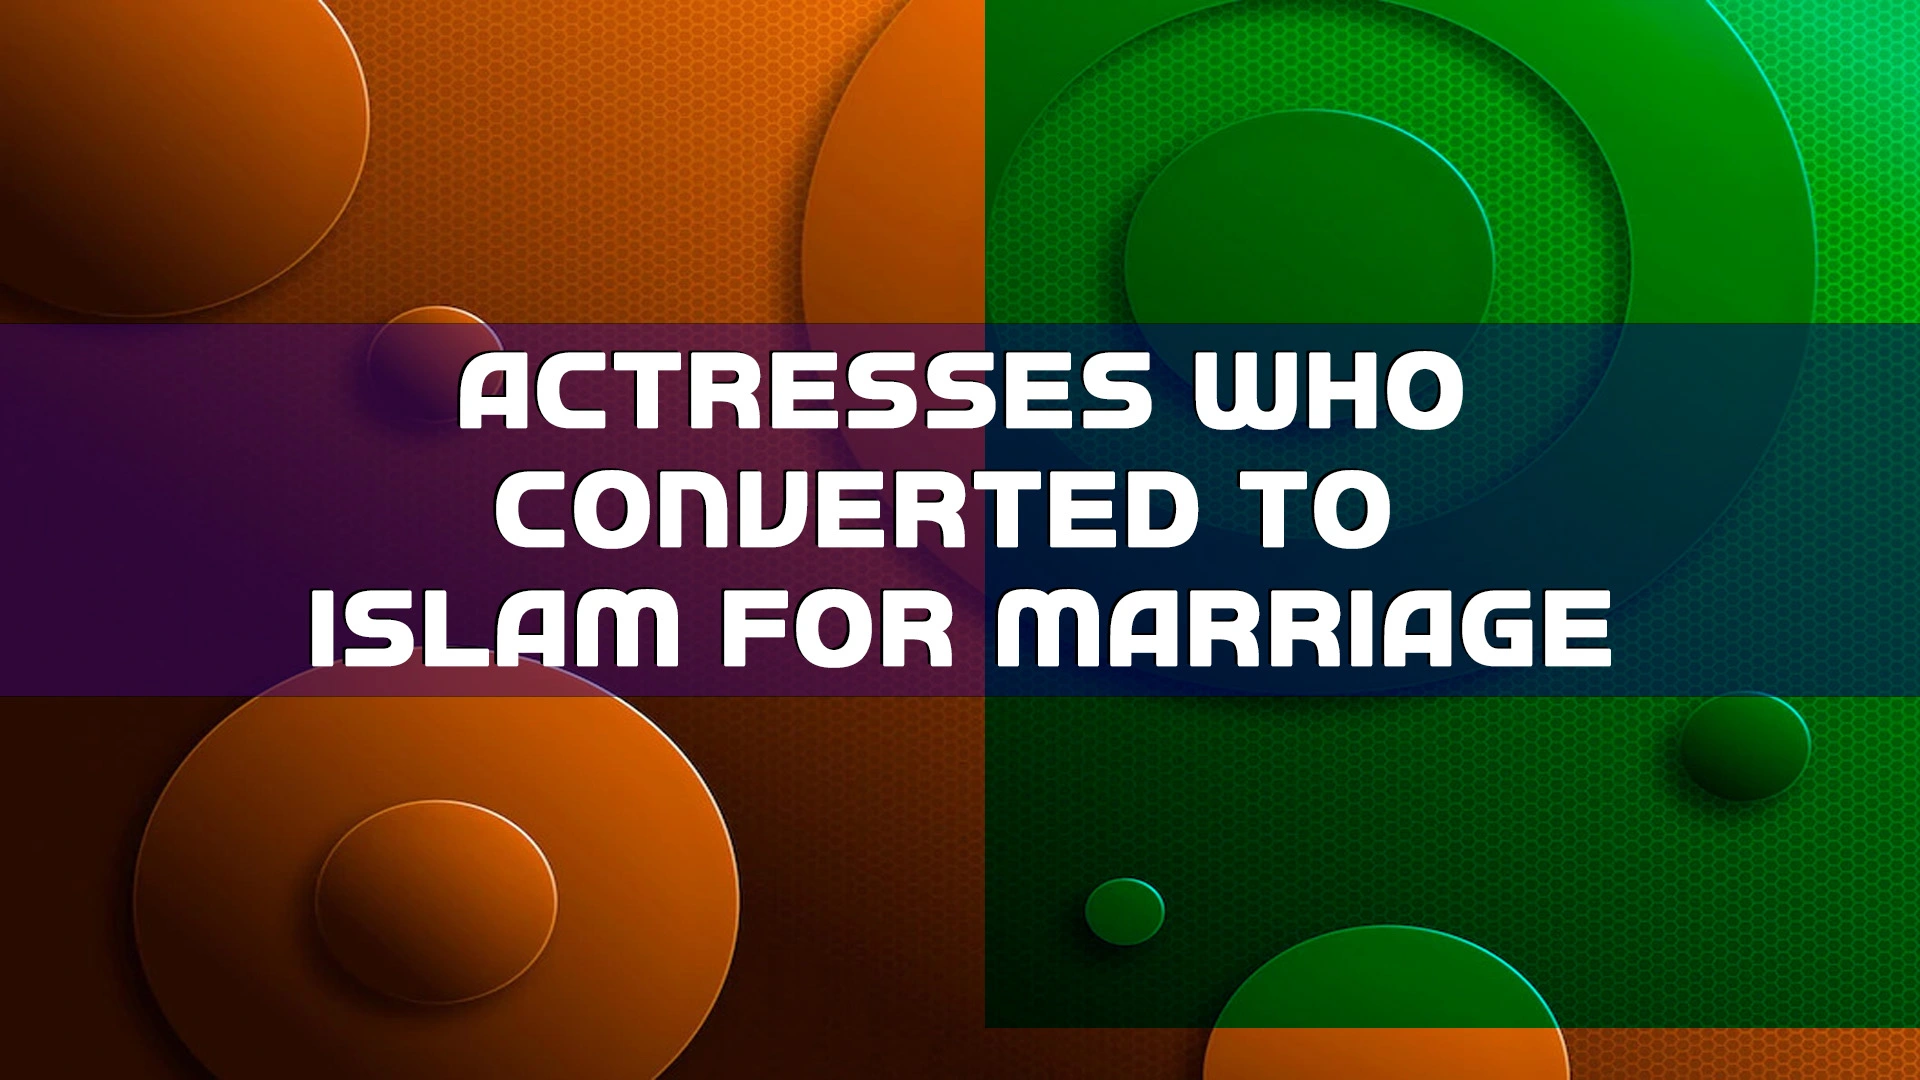 वो इंडियन एक्ट्रेस जिन्होंने शादी के लिए इस्लाम धर्म को अपनाया, Actresses Who Converted To Islam For Marriage